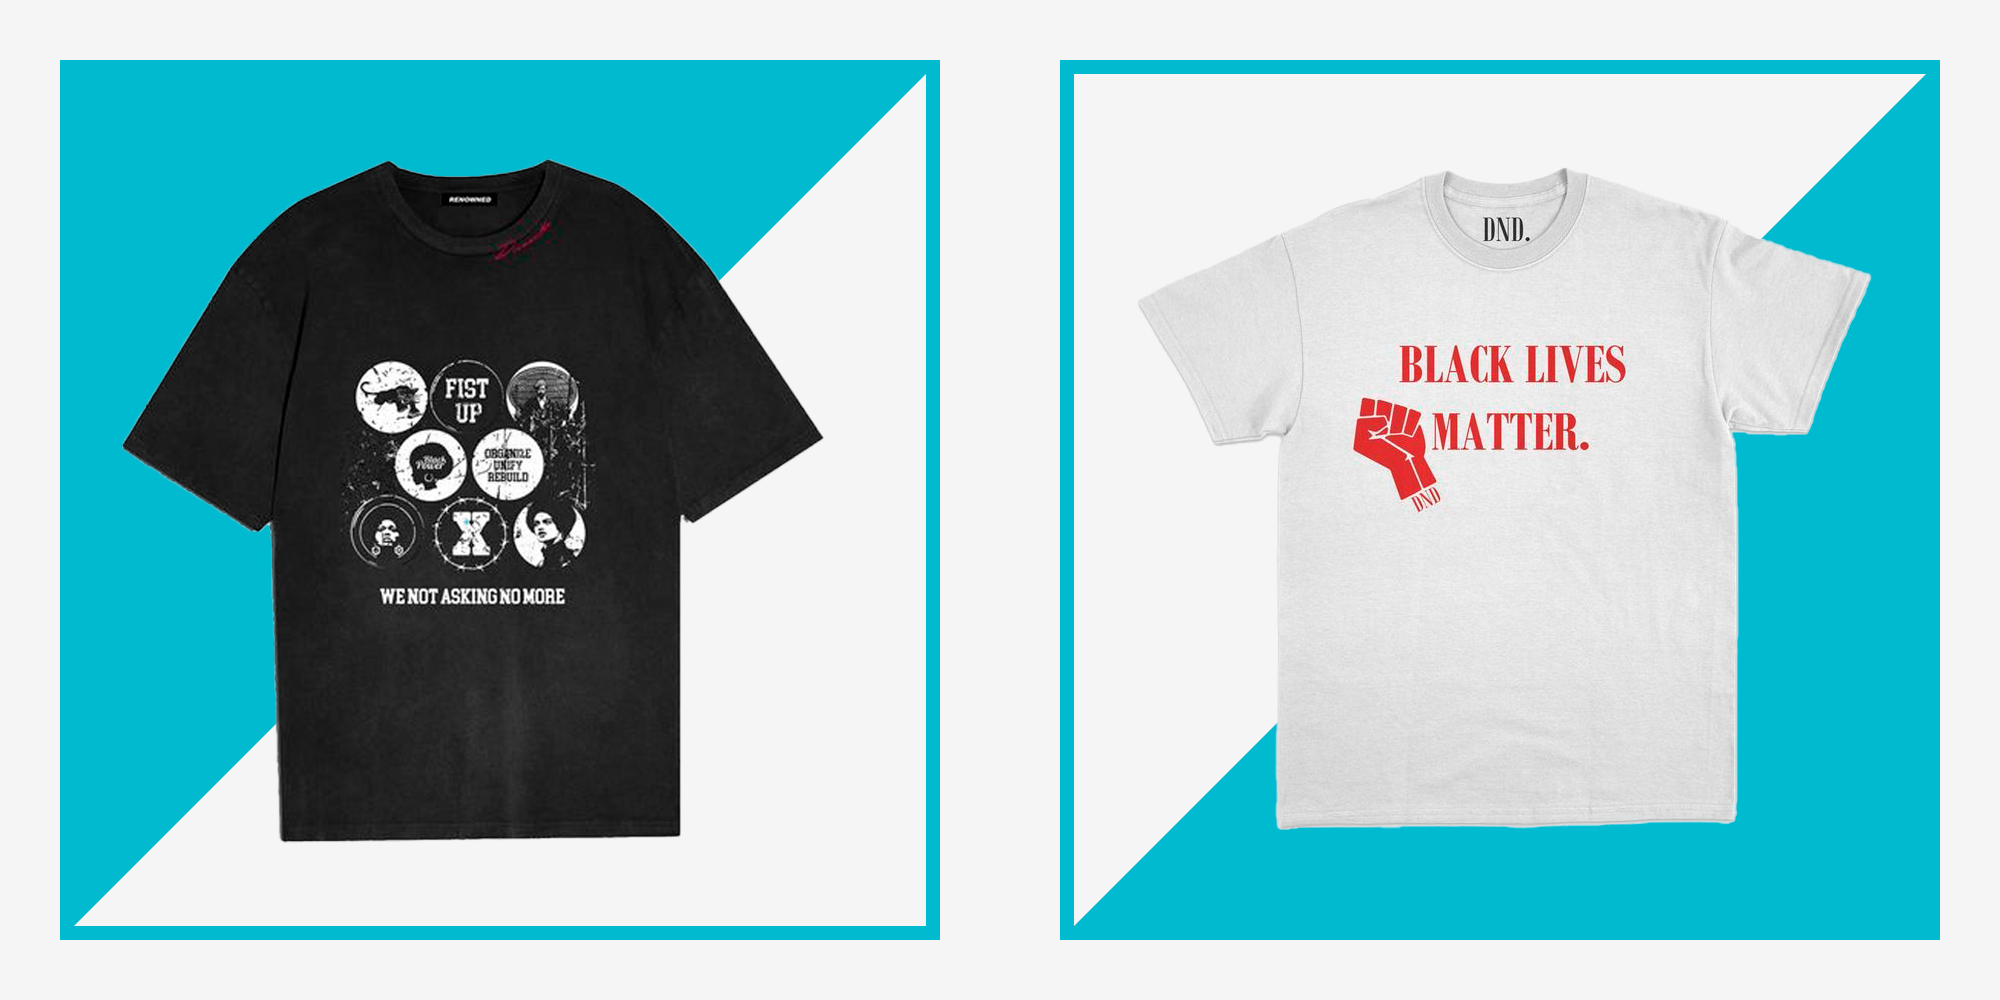 Grand Bliv overrasket lanthan 10 Men's T-Shirts That Support Black Lives Matter & Black Causes